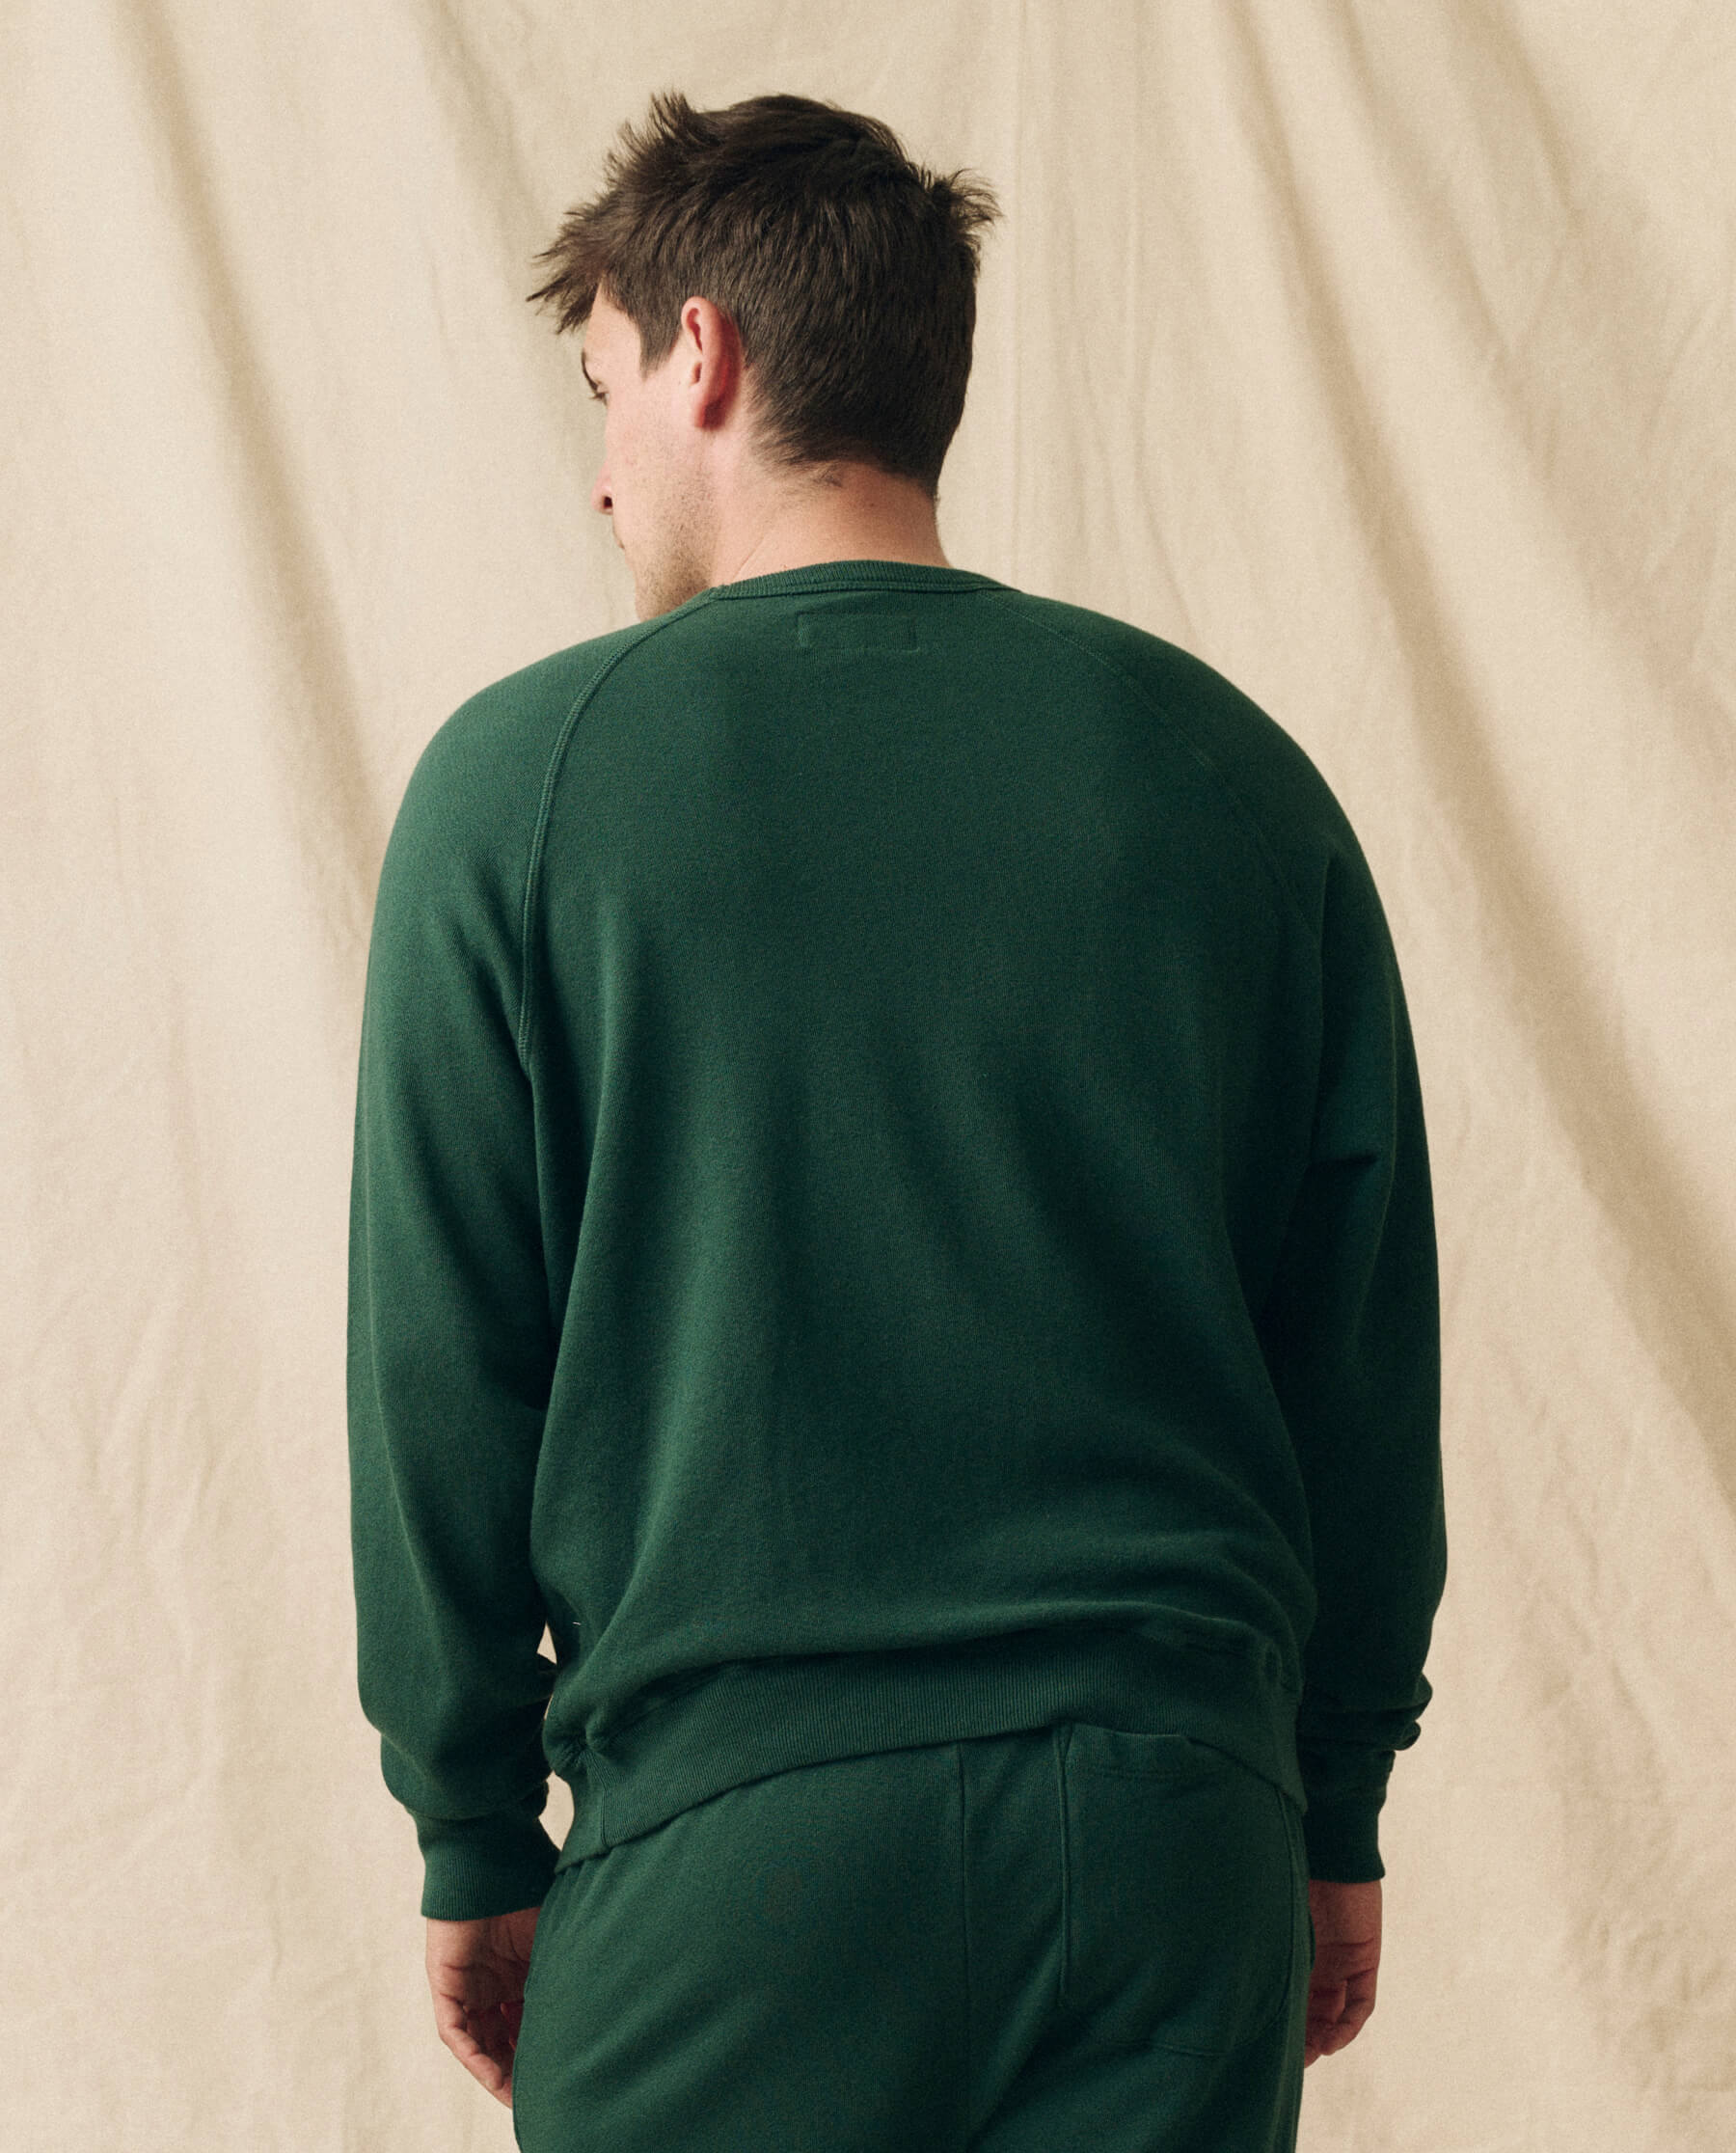 The Men's College Sweatshirt. -- Green Grove